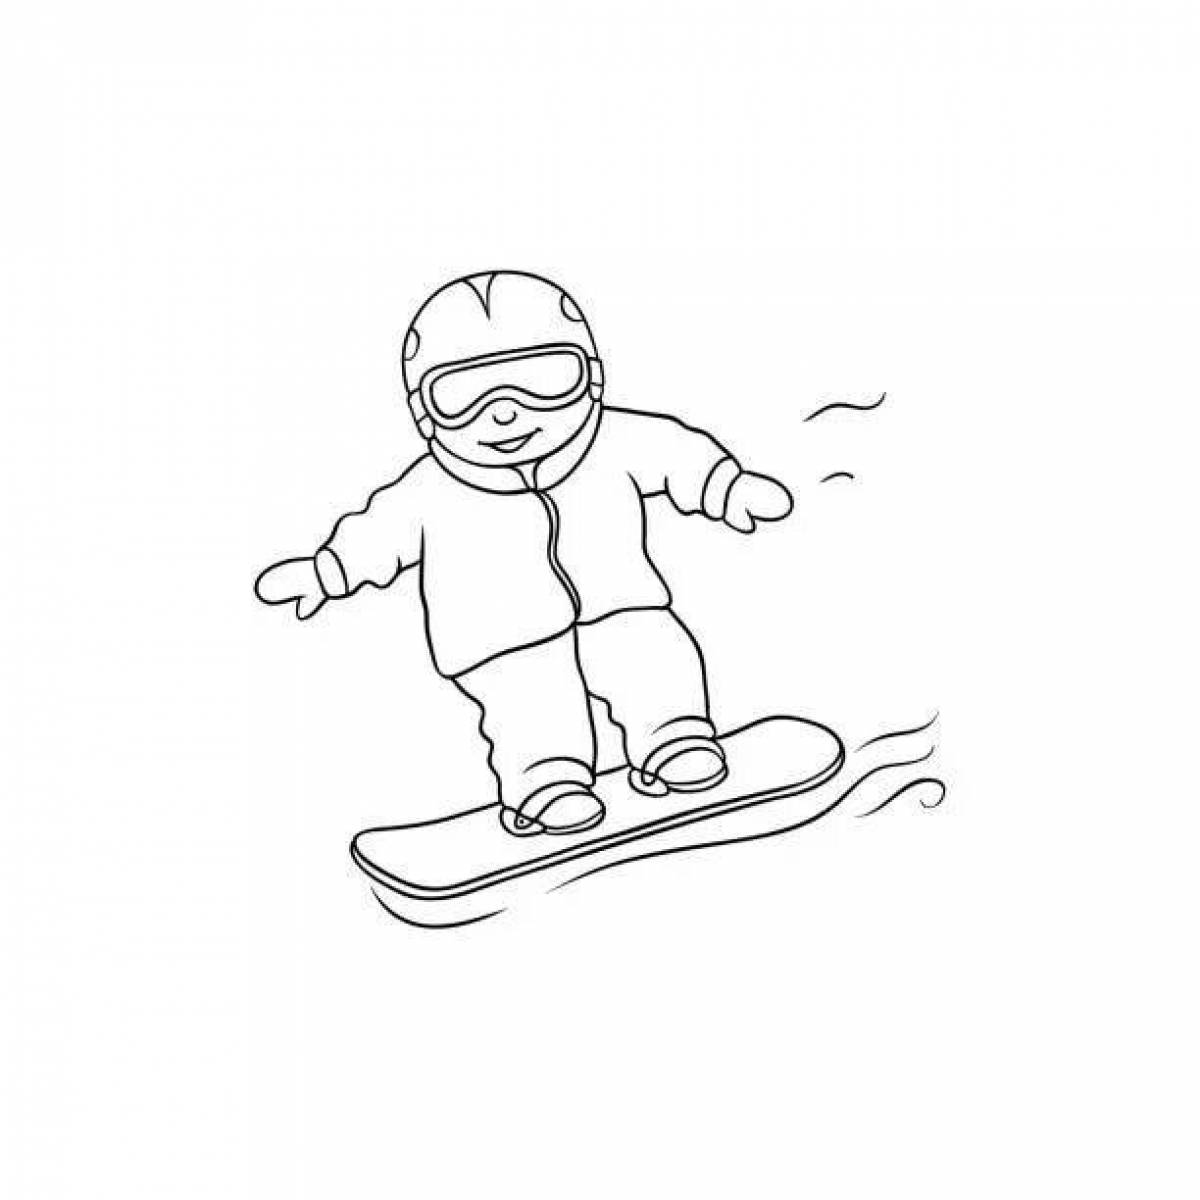 Snowboarder #1